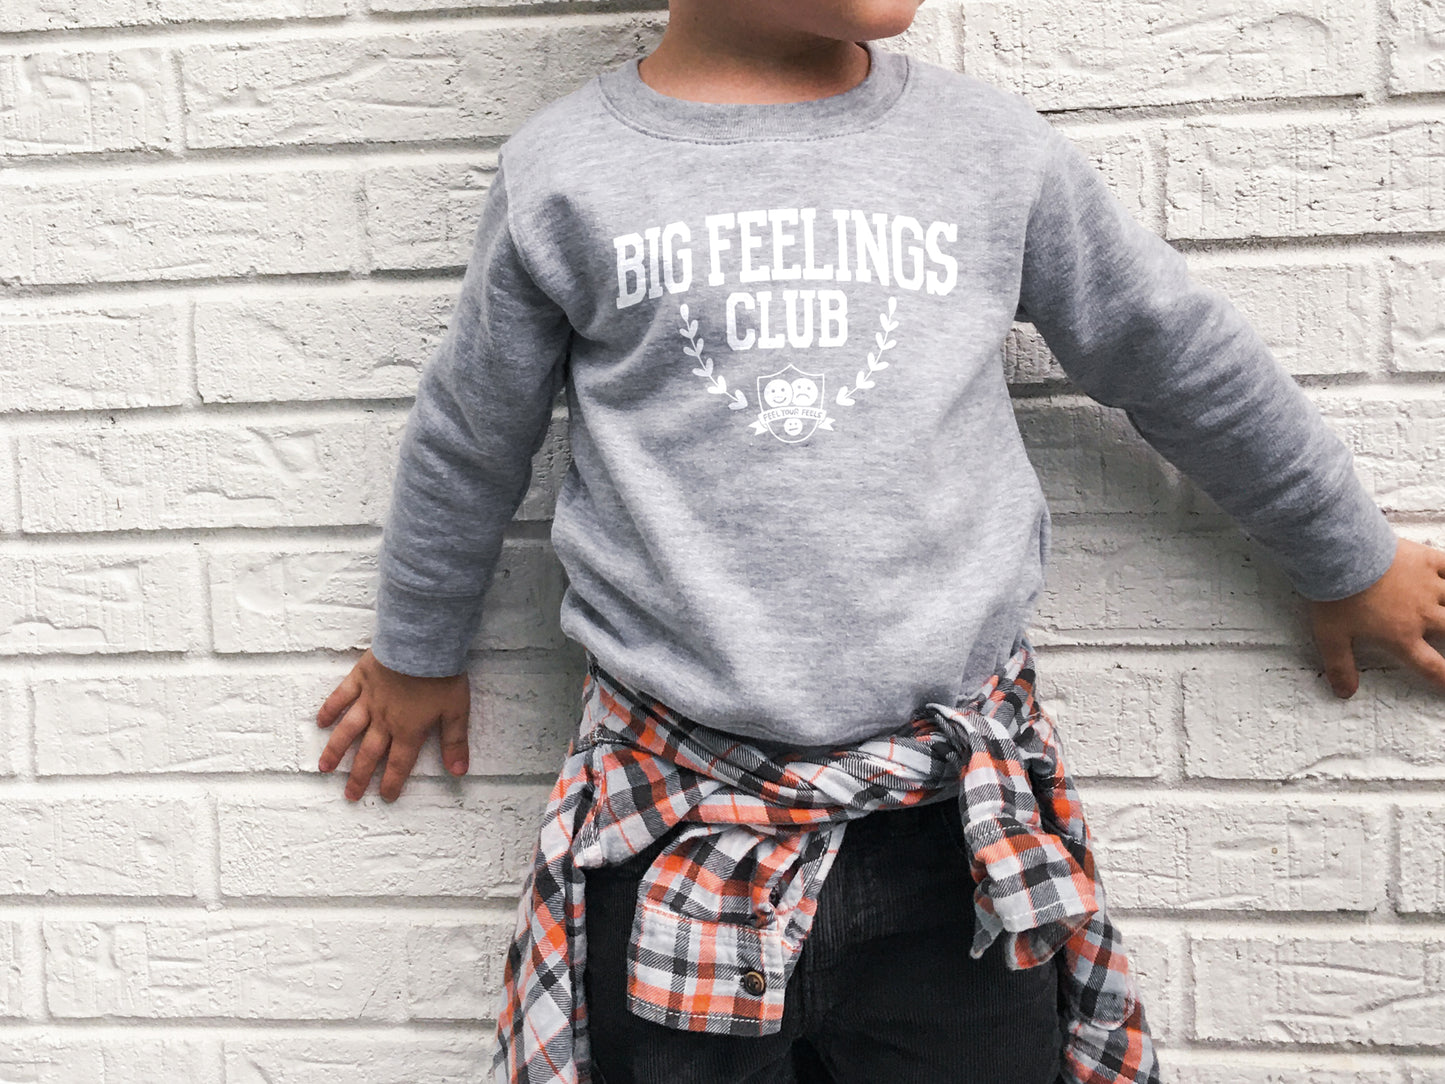 Big Feelings Club Toddler Sweatshirt